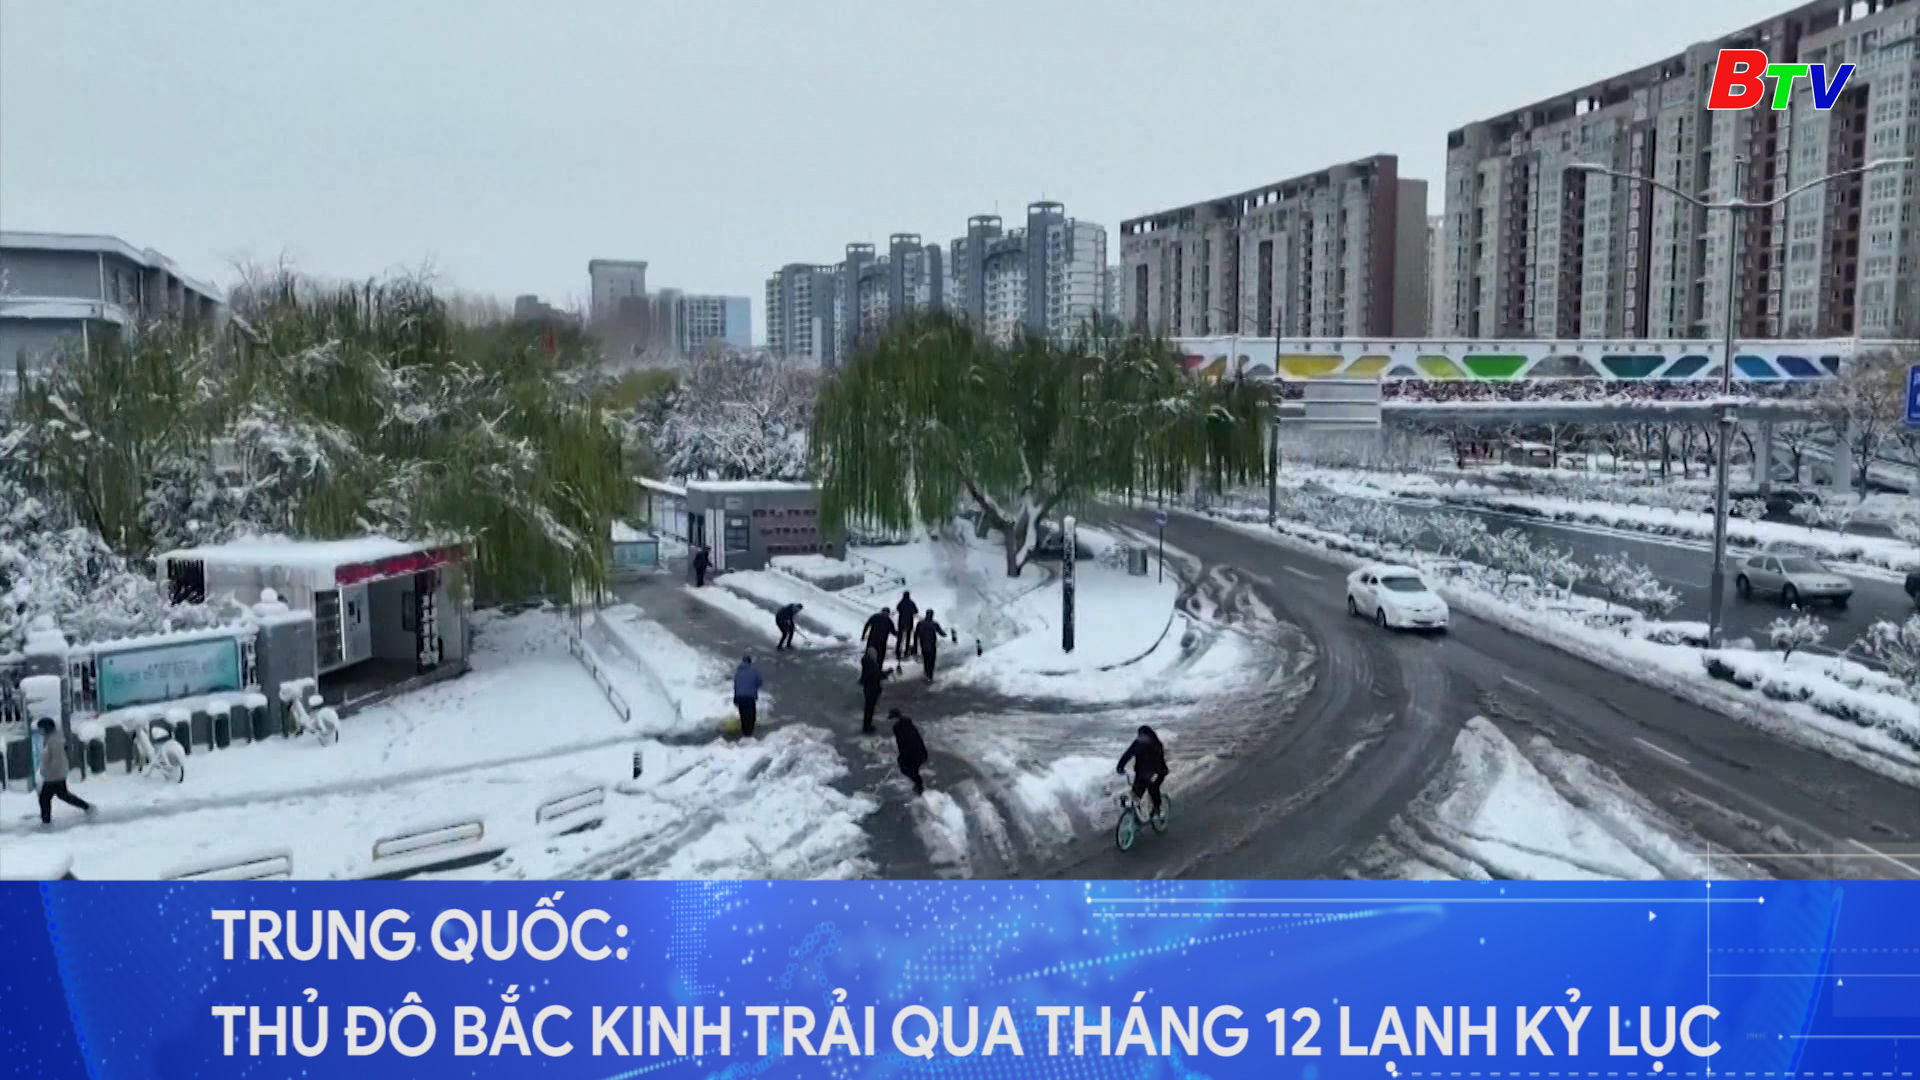 Trung Quốc: thủ đô Bắc Kinh trải qua tháng 12 lạnh kỷ lục